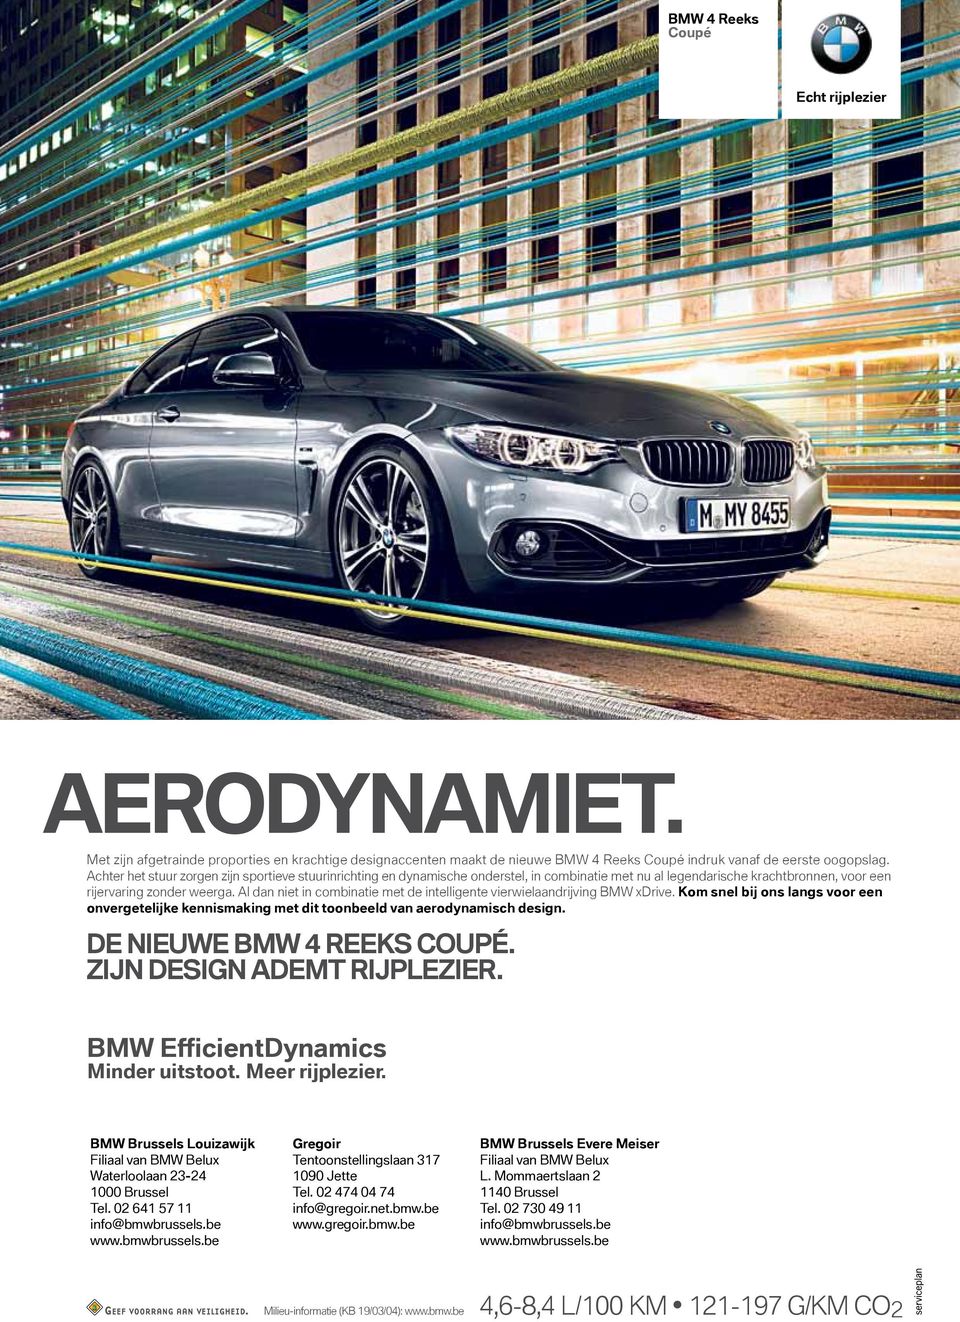 Al dan niet in combinatie met de intelligente vierwielaandrijving BMW xdrive. Kom snel bij ons langs voor een onvergetelijke kennismaking met dit toonbeeld van aerodynamisch design.